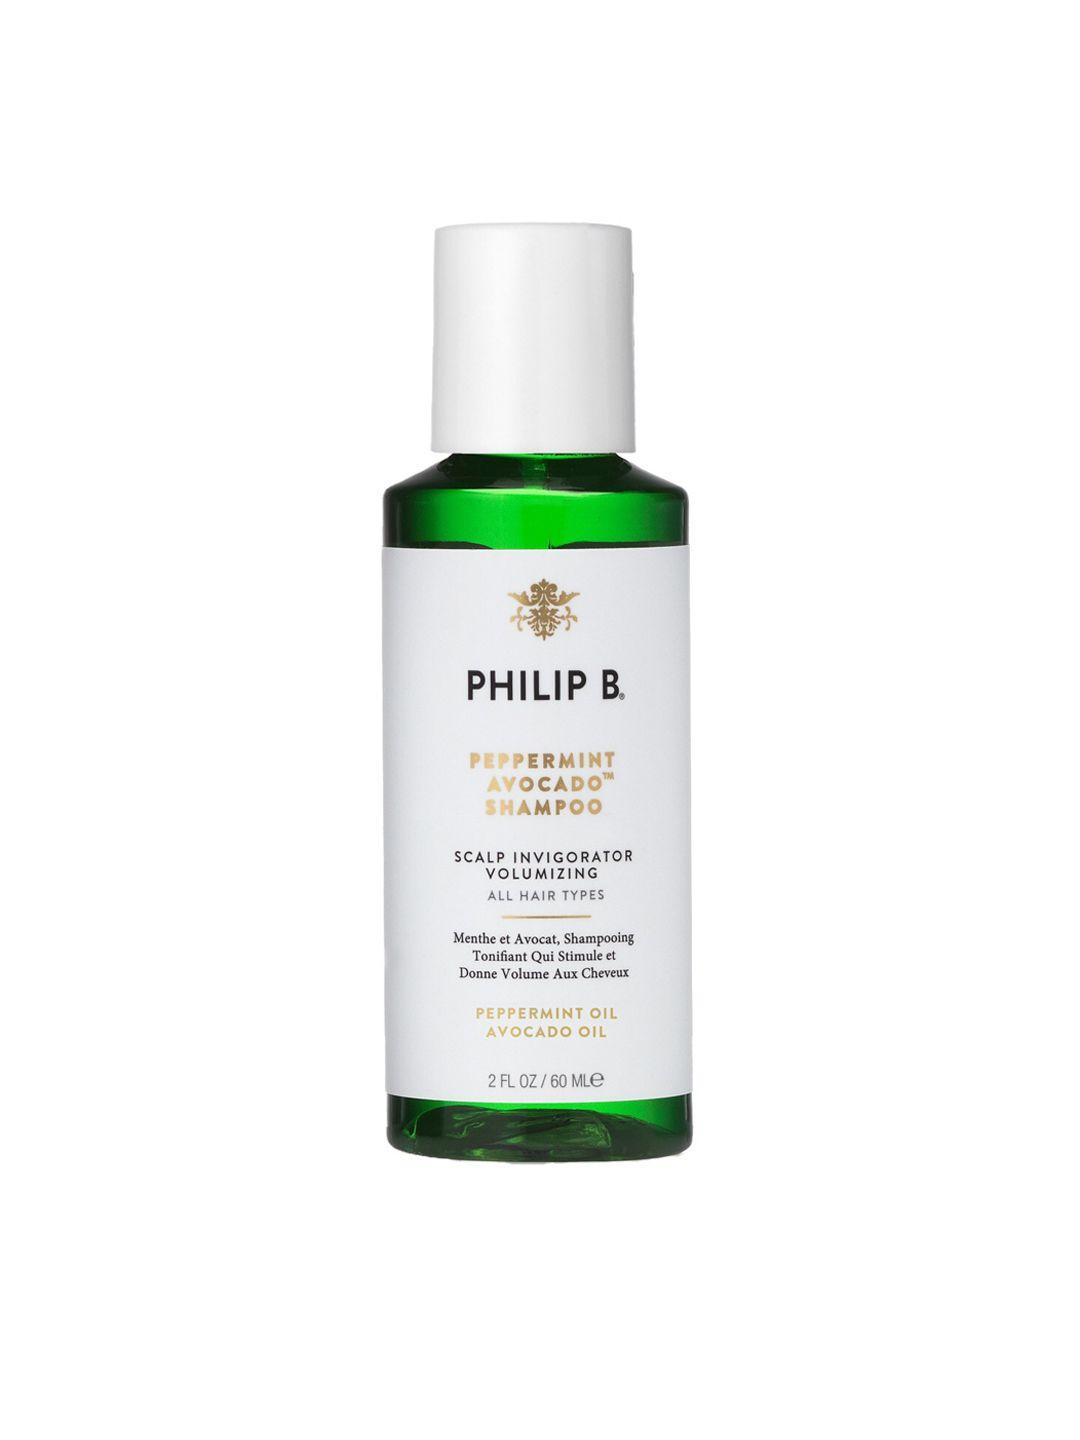 philip b peppermint avocado shampoo - 60ml